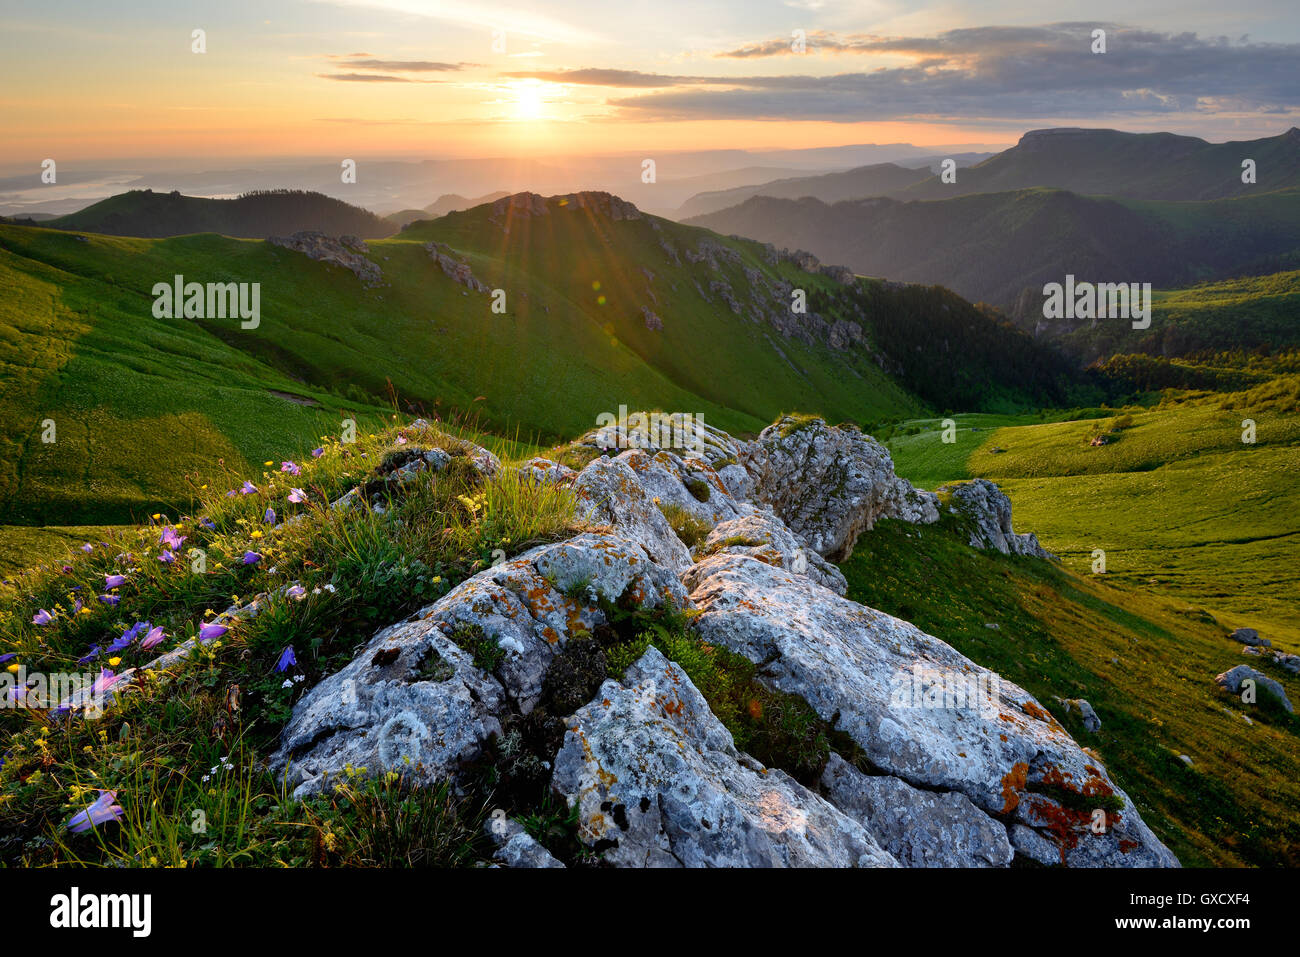 Rock e il paesaggio della valle, Bolshoy Thach (Big Thach) Natura Park, monti caucasici, Repubblica di Adygea, Russia Foto Stock